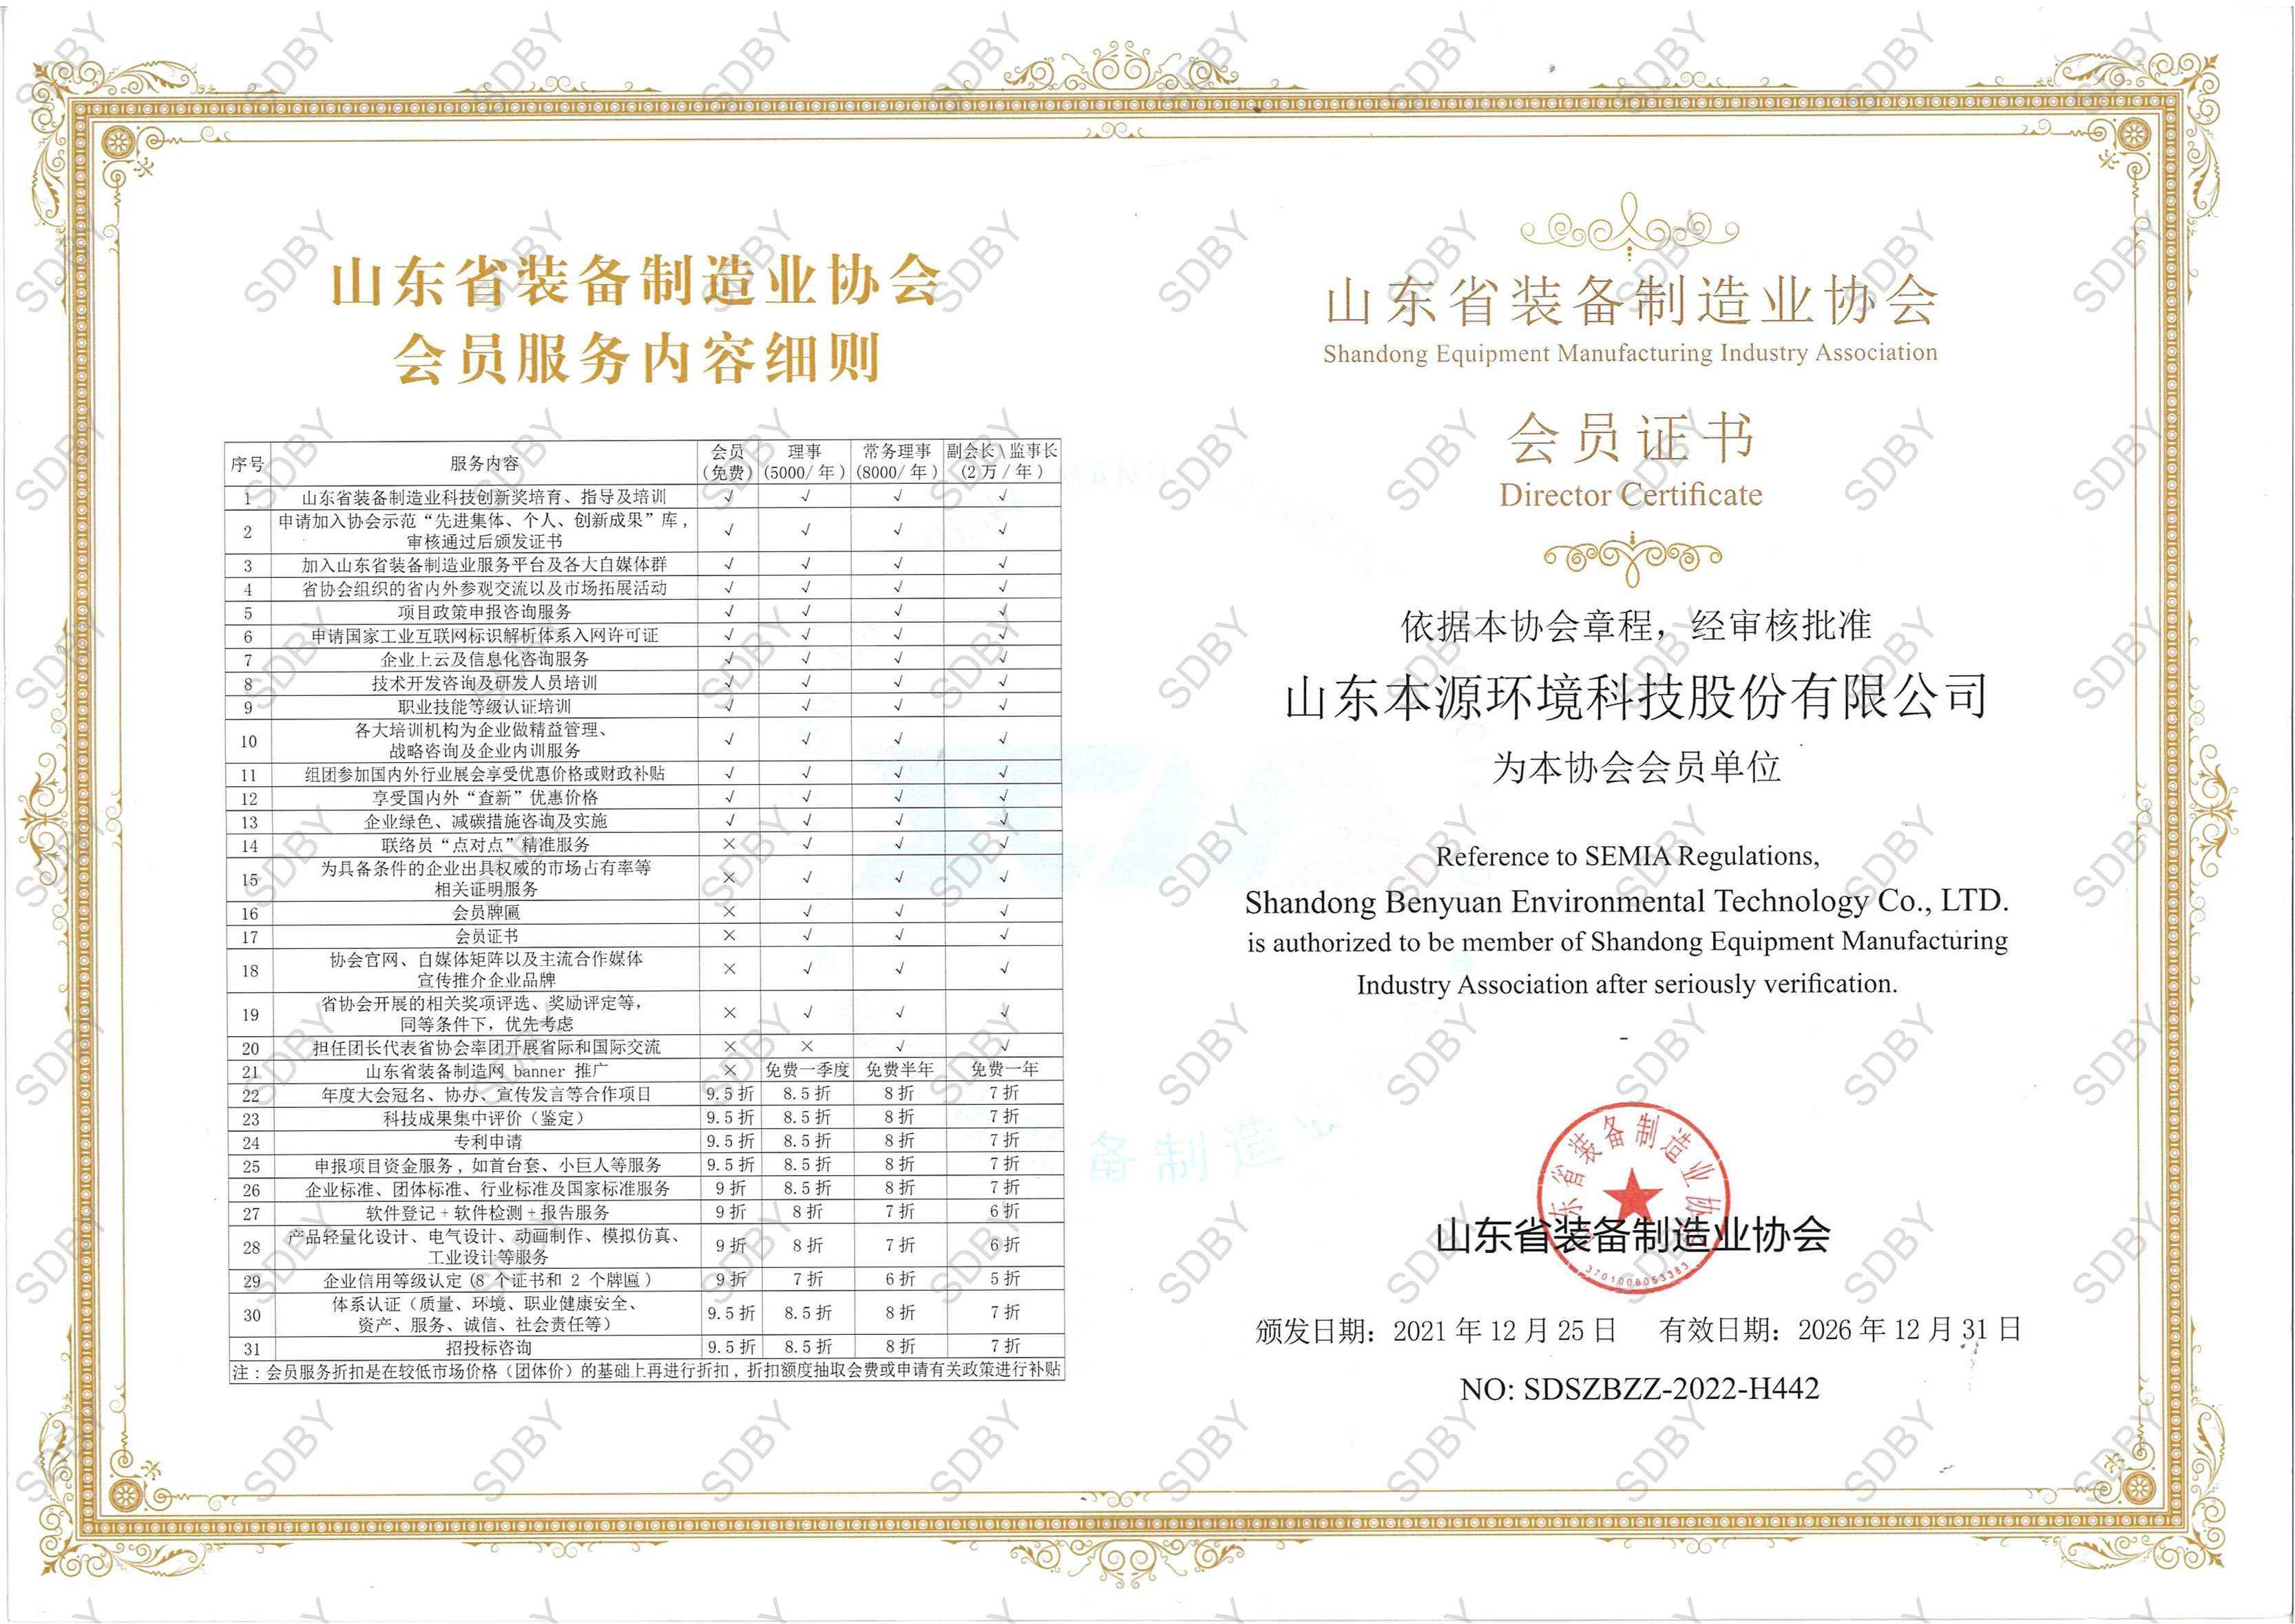 山东省装备制造业协会会员证-水印(1)_01.jpg